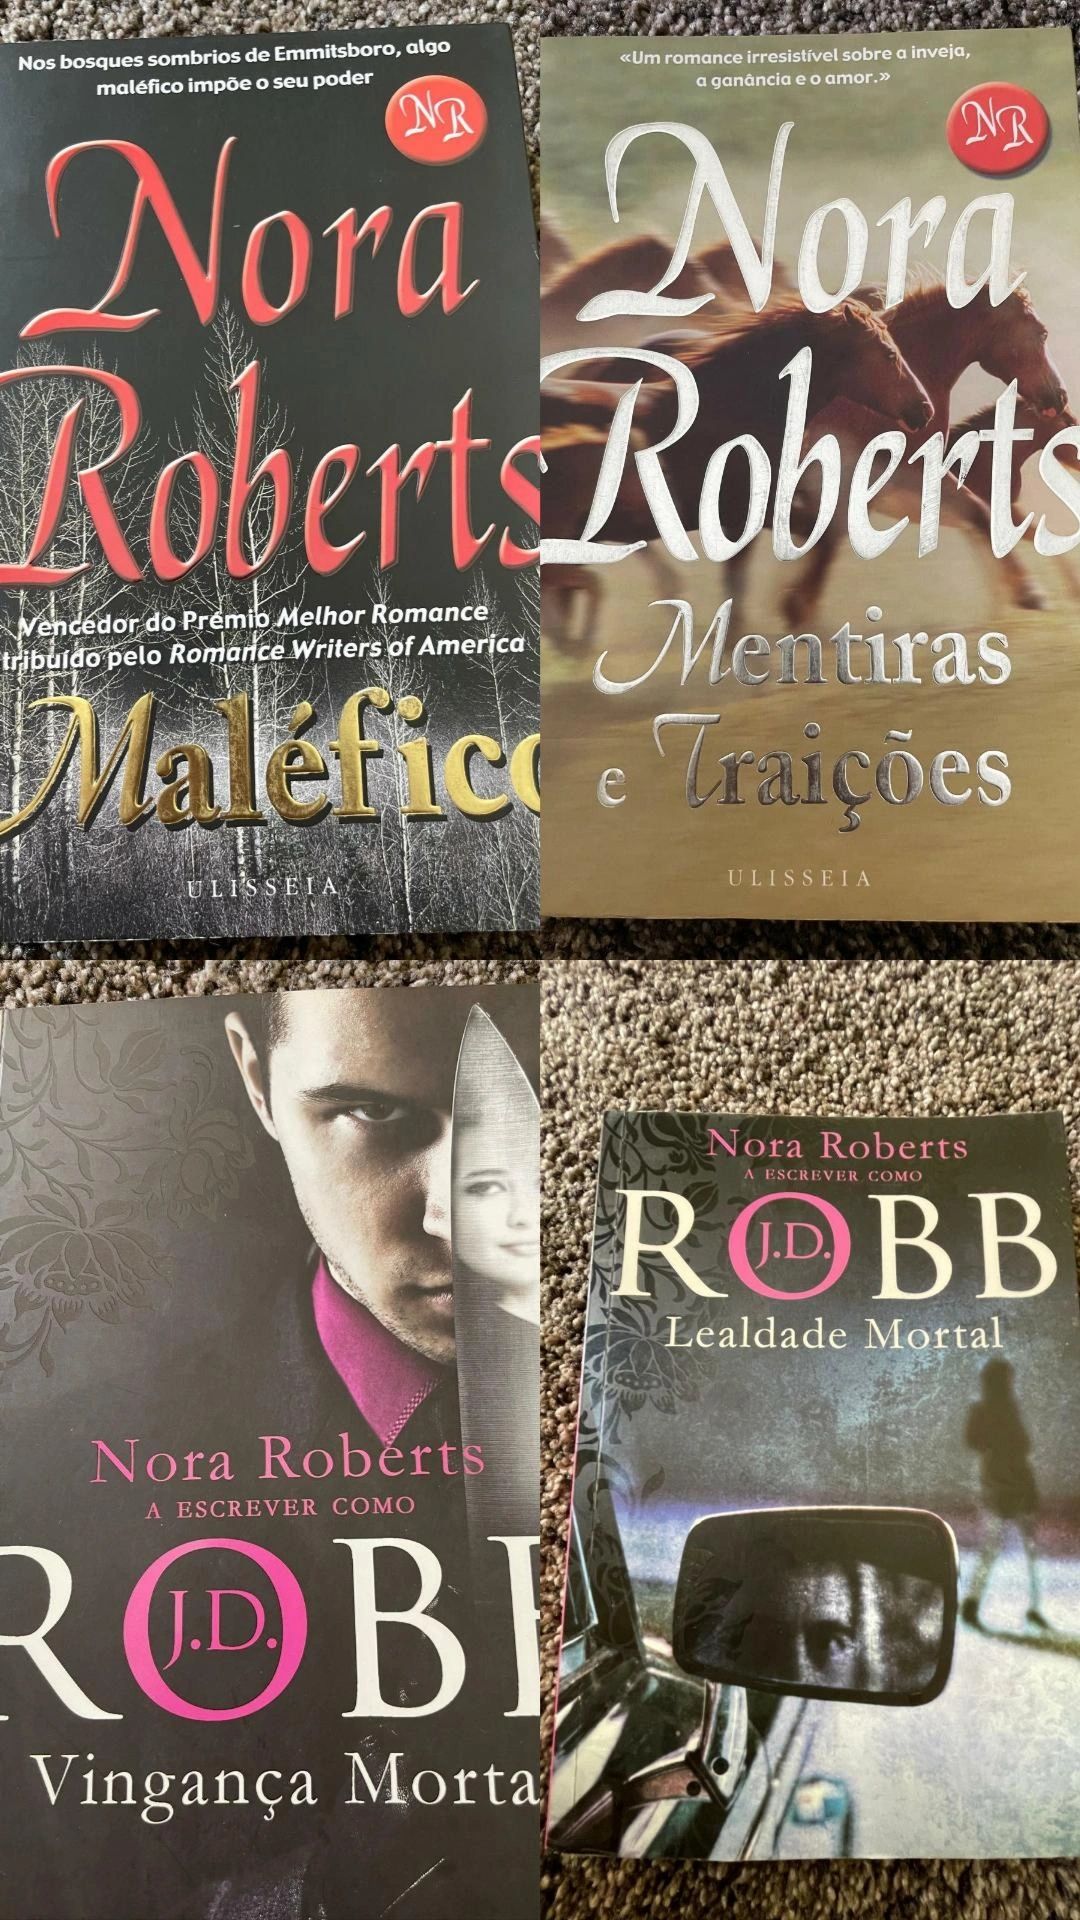 Livros coleção Nora Roberts